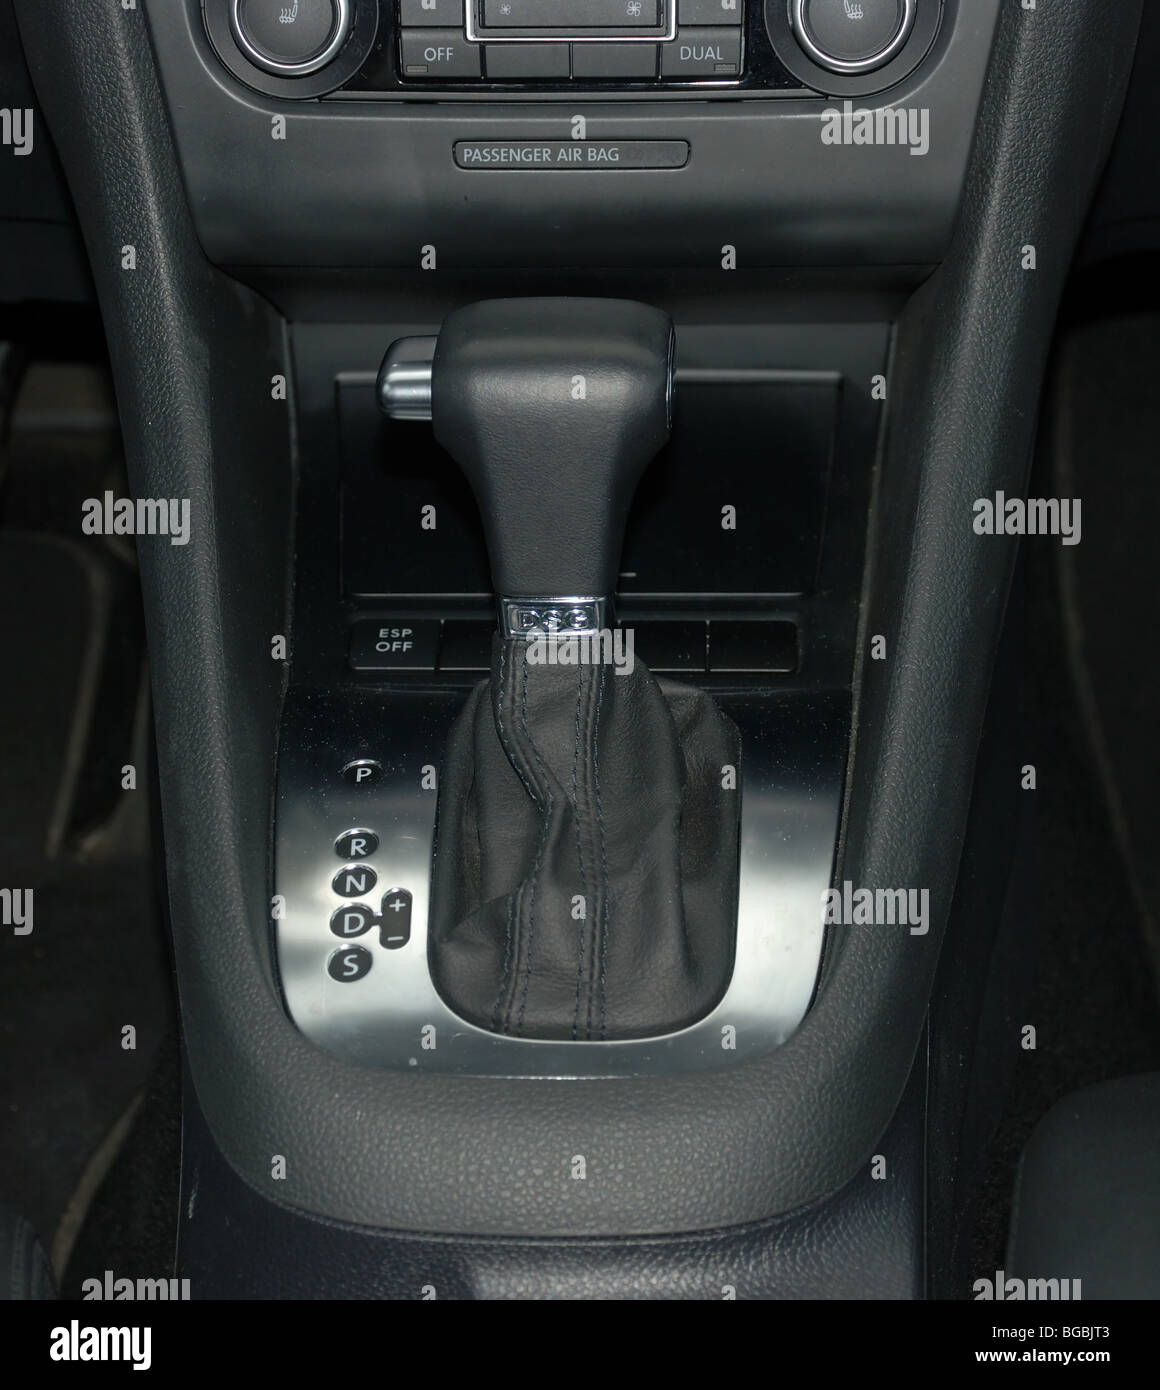 Dsg automatic gearshift vw immagini e fotografie stock ad alta risoluzione  - Alamy